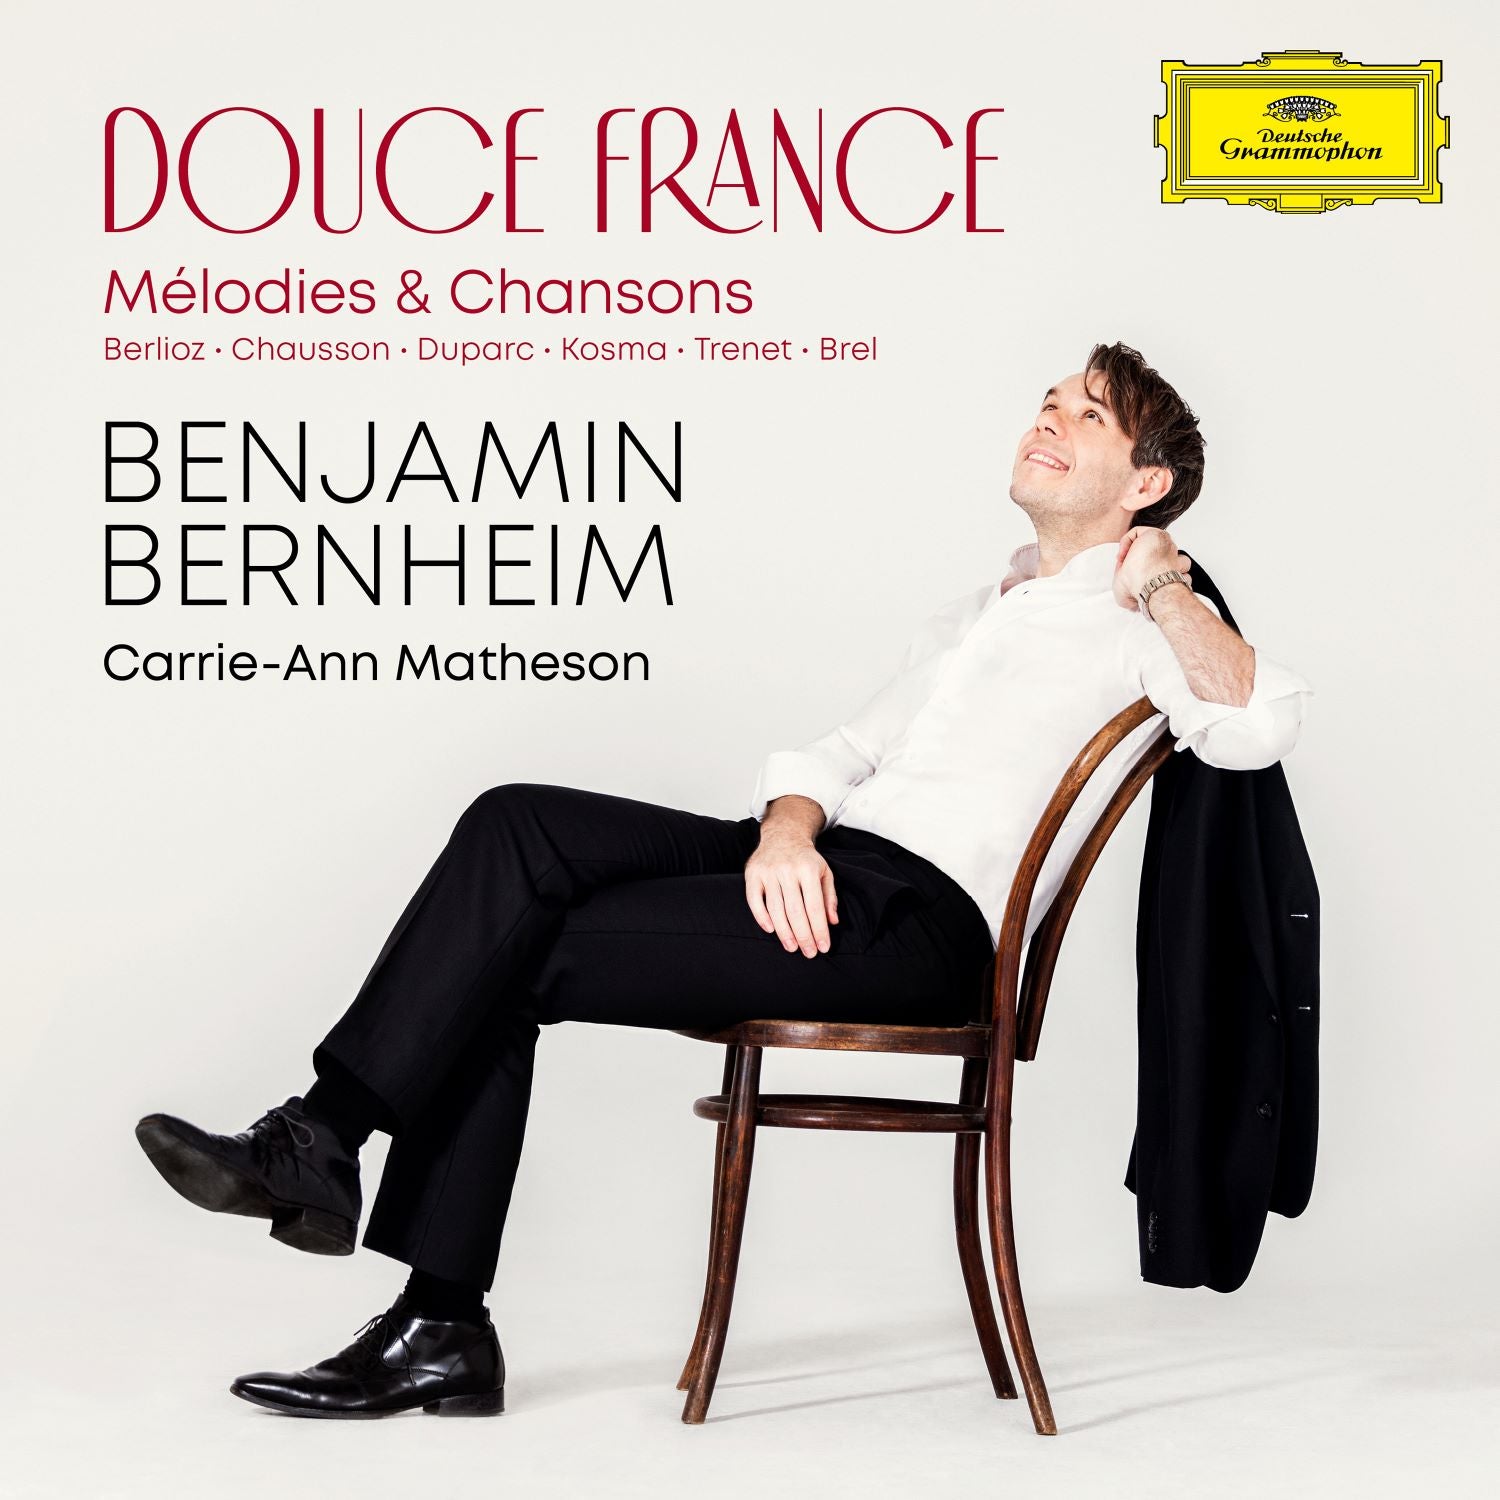 Benjamin Bernheim, Carrie-Ann Matheson - Douce France - Mélodies & Chansons: CD